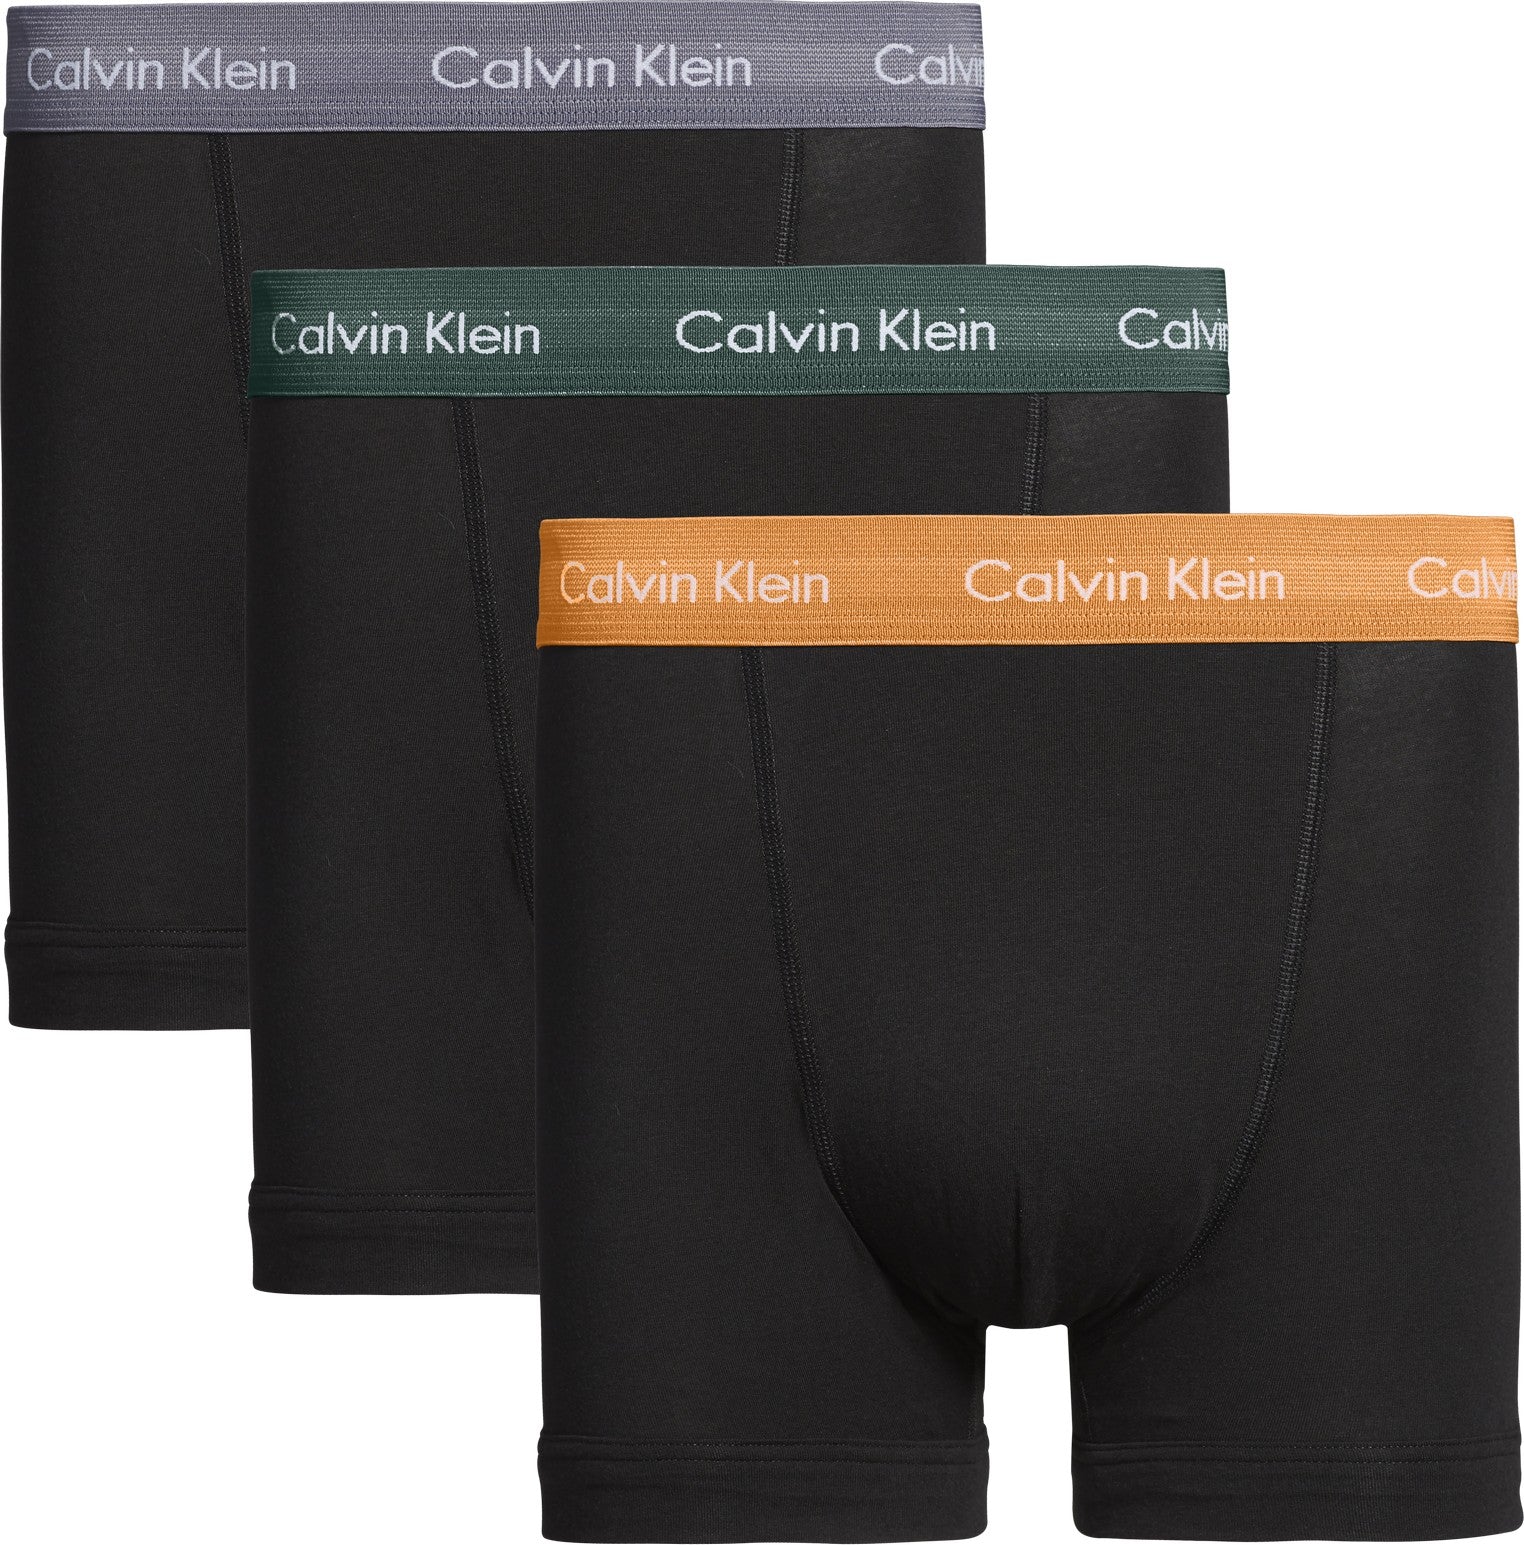 3-Pack Trunk Cotton stretch 0000U2662G - Jambelles Calvin Klein S / Jungle Leaf/Soot/Orange